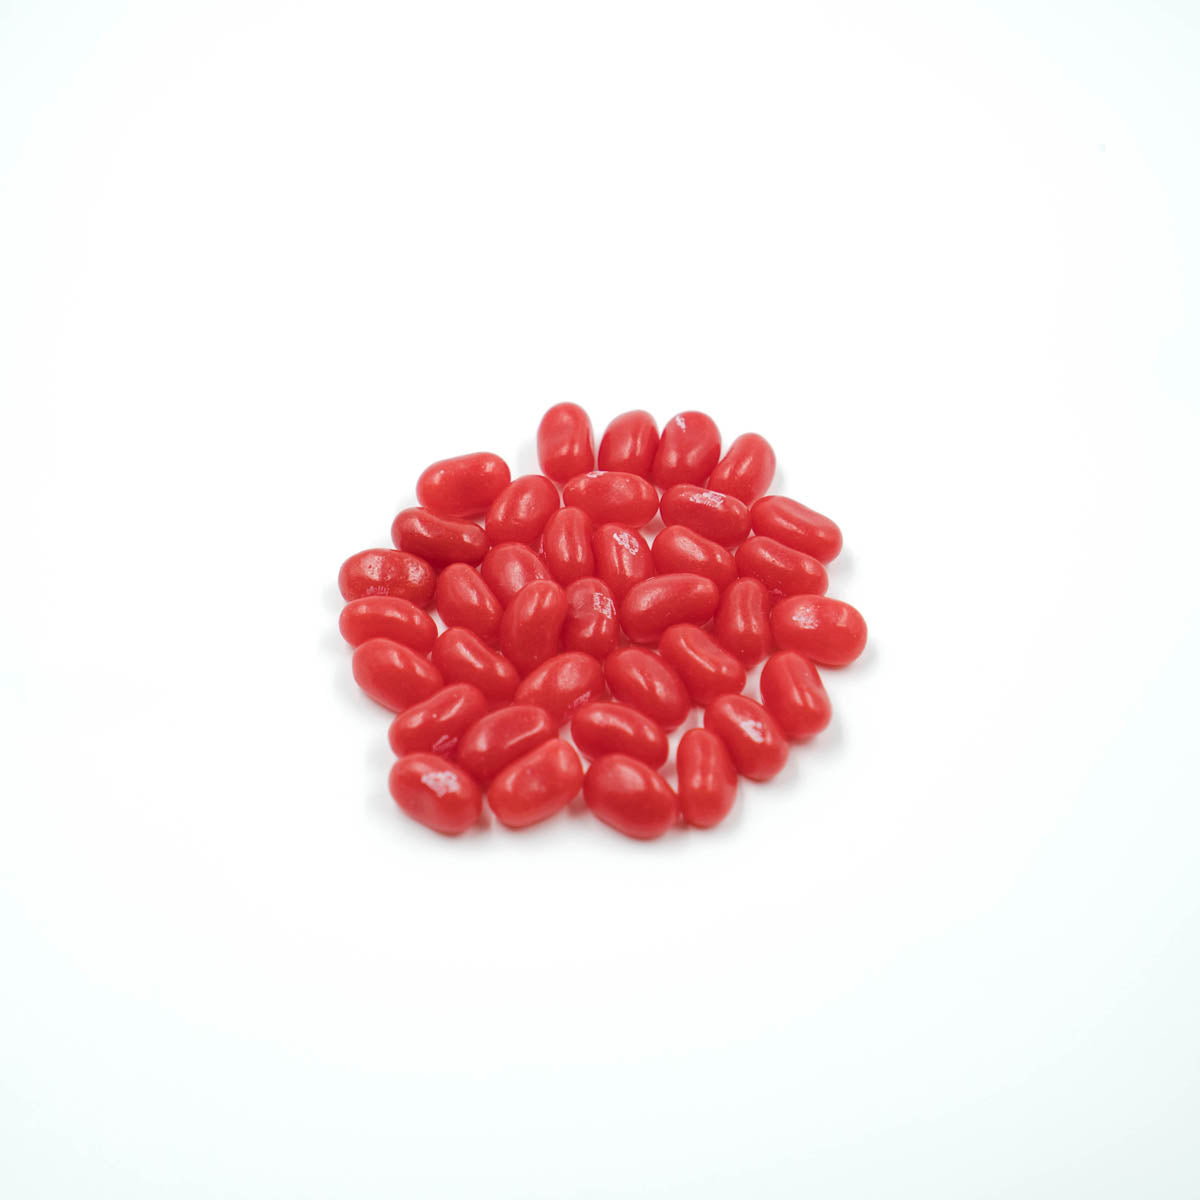 Un petit tas de bonbons en formes d'haricots rouges, sur fond blanc